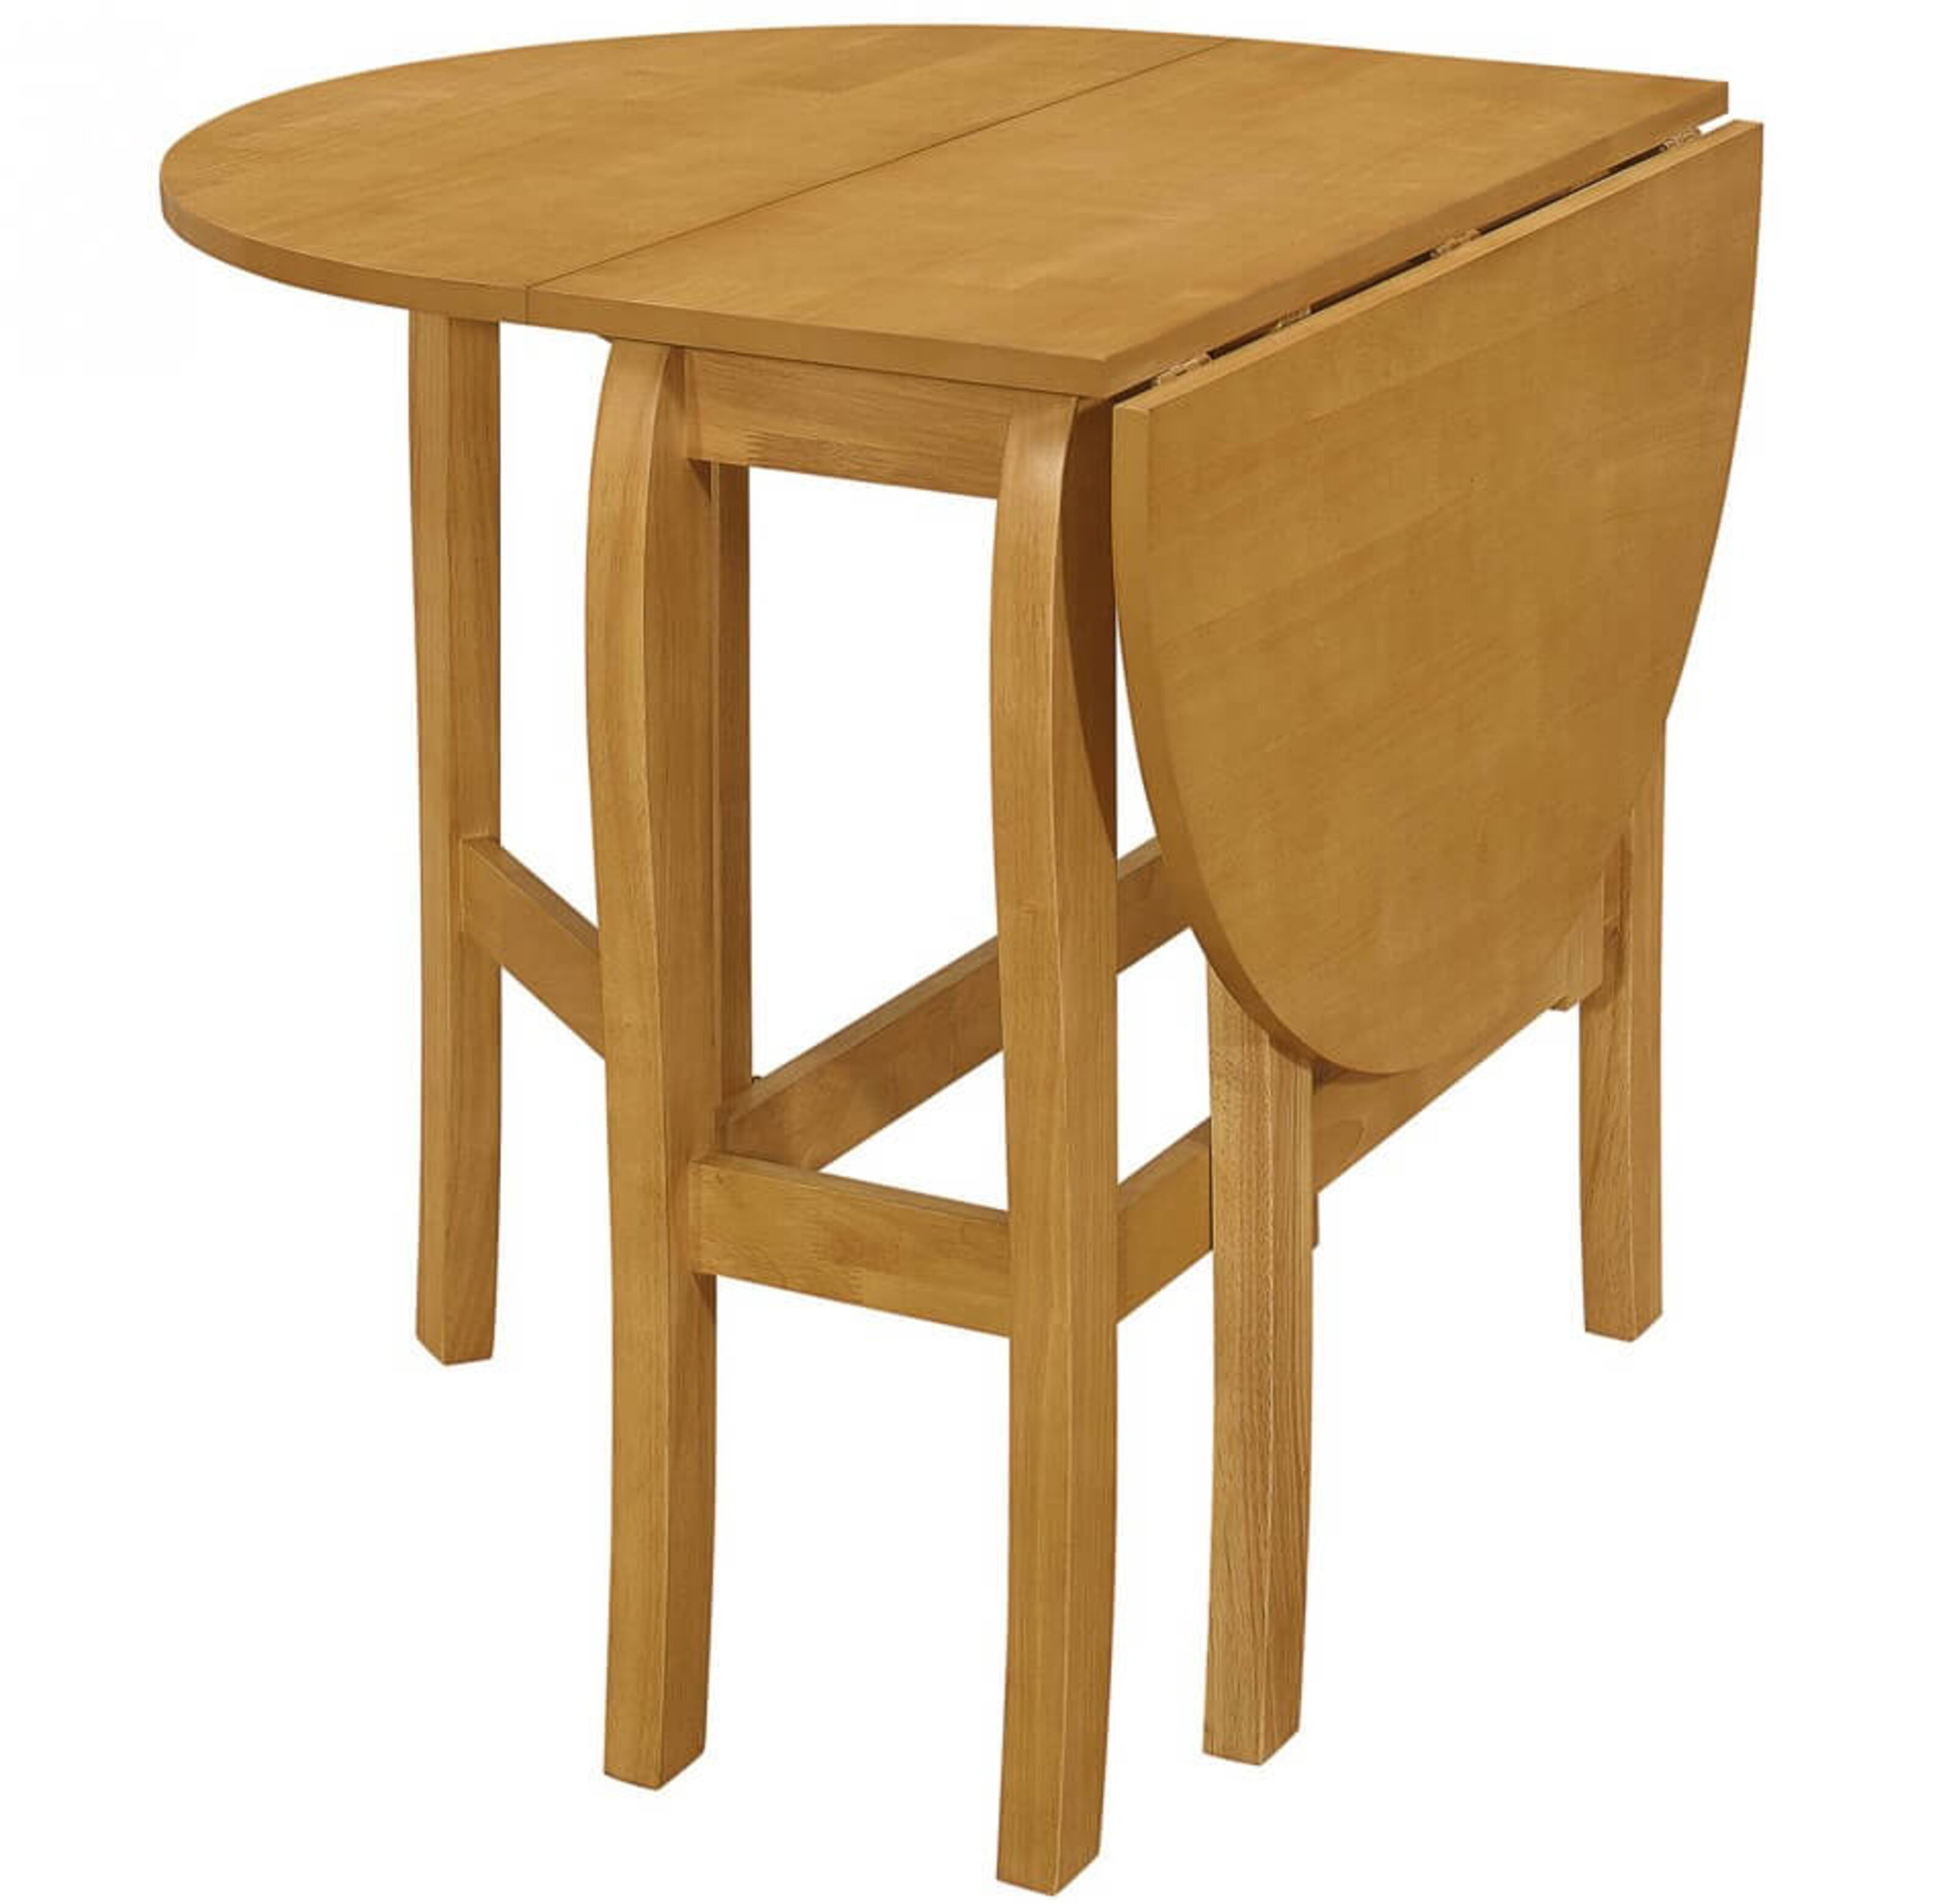 Quinby Light Oak Oval Drop Leaf Dining Table Veneer Top With Solid Rubberwood Frame Designer Sofas4u